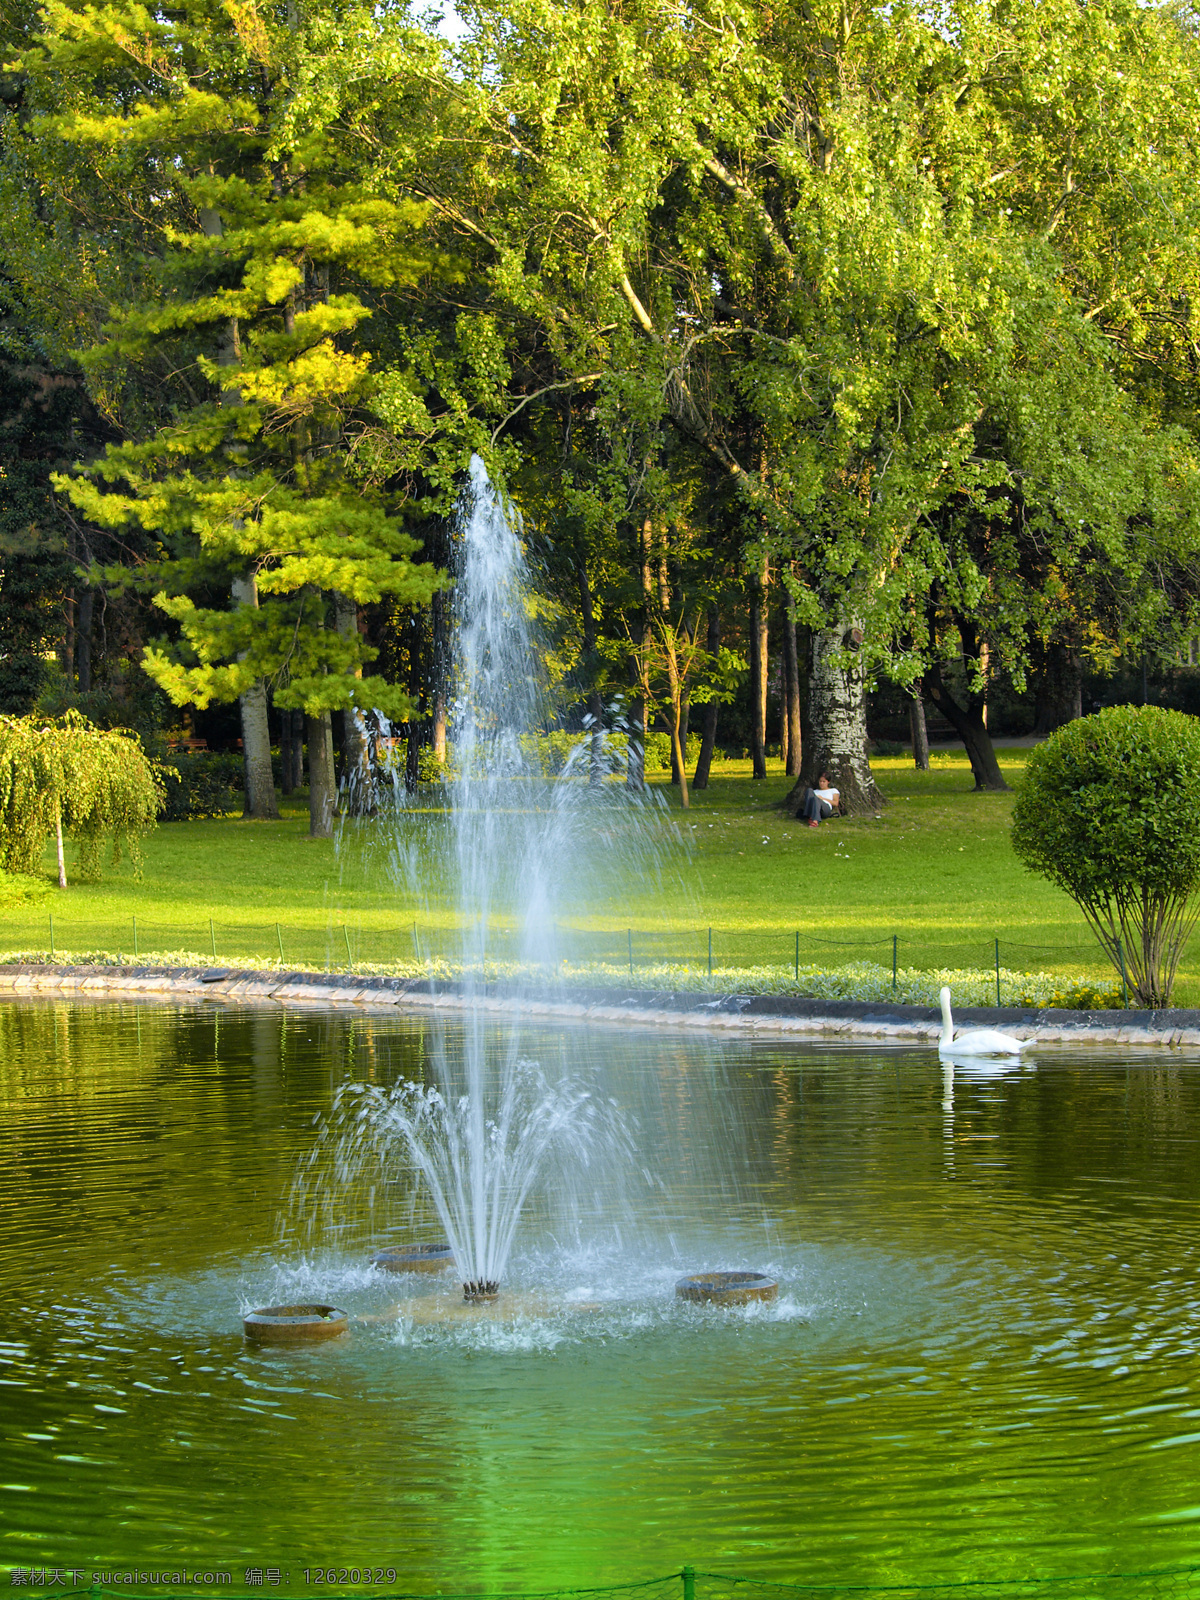 公园 喷泉 公园喷泉 园林 花丛 大树 树丛 台阶 生态公园 休闲旅游 山水风景 自然景观 建筑设计 环境家居